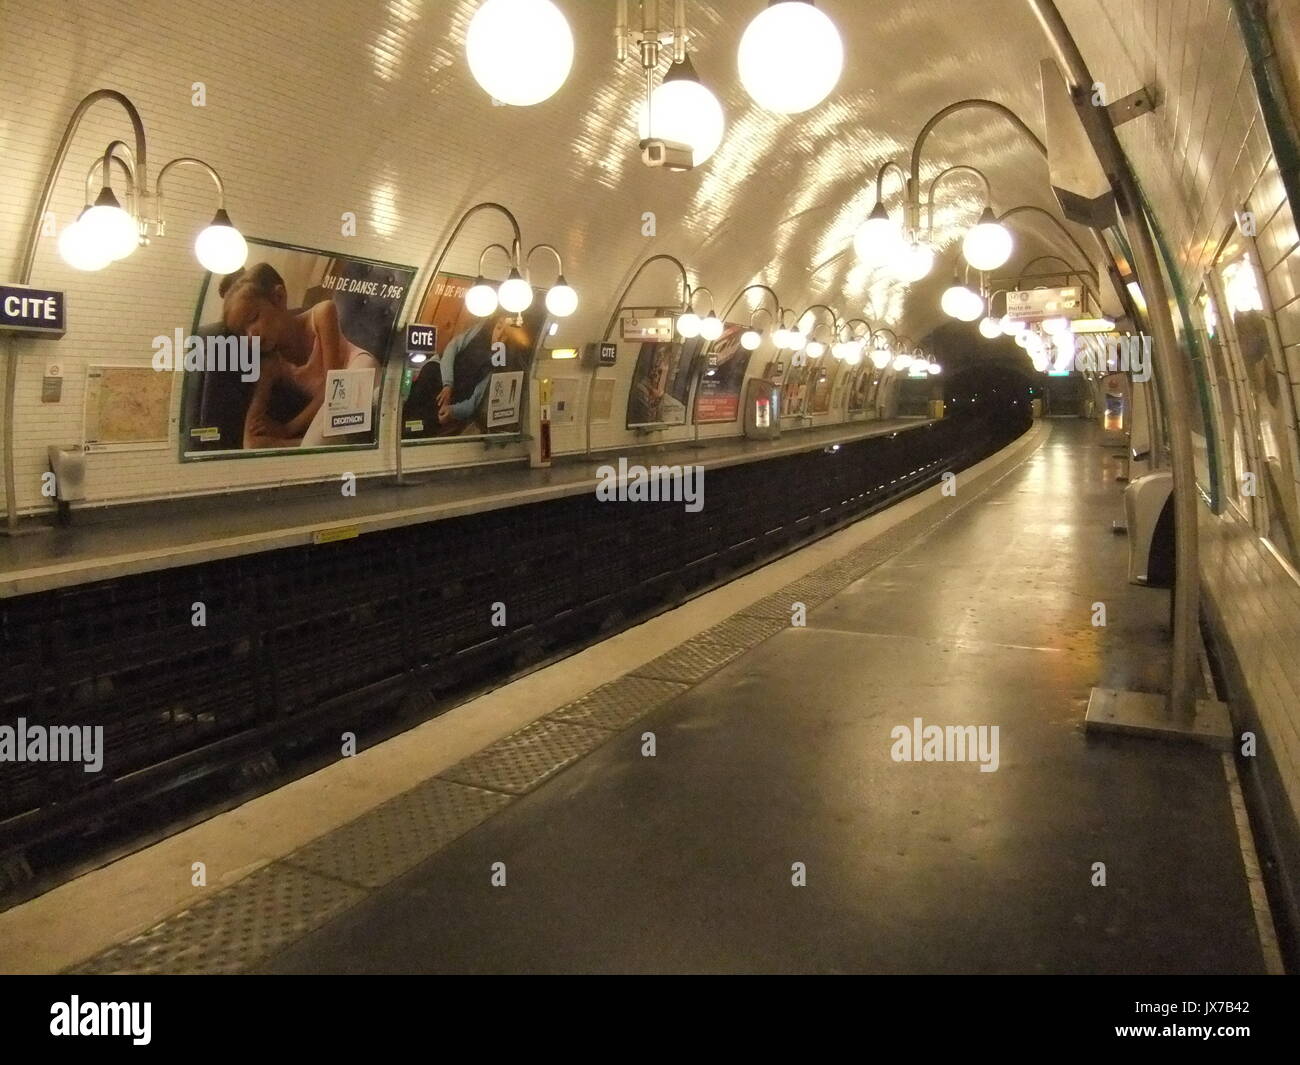 Cité de la plate-forme de la station de métro la nuit, à Paris Banque D'Images